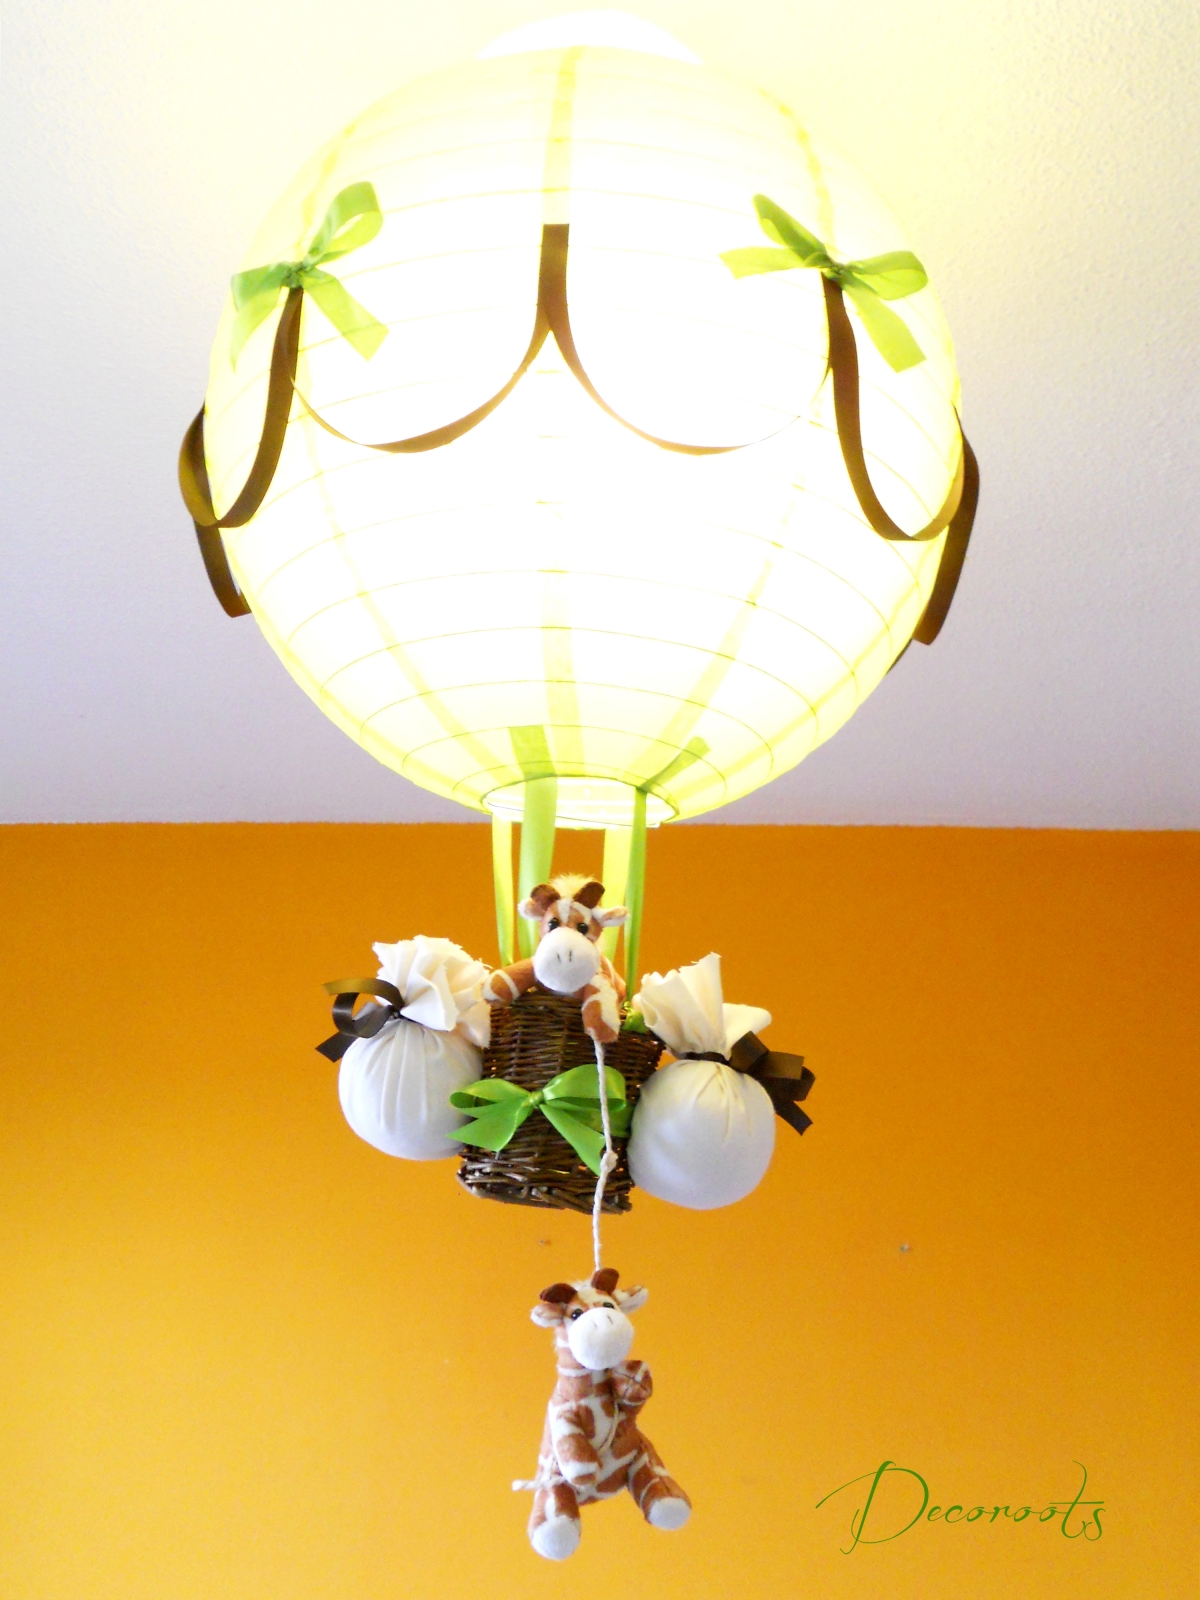 lampe montgolfière enfant bébé girafe thème jungle safari abat jour lustre lampe luminaire vert anis marron chocolat allumée 2